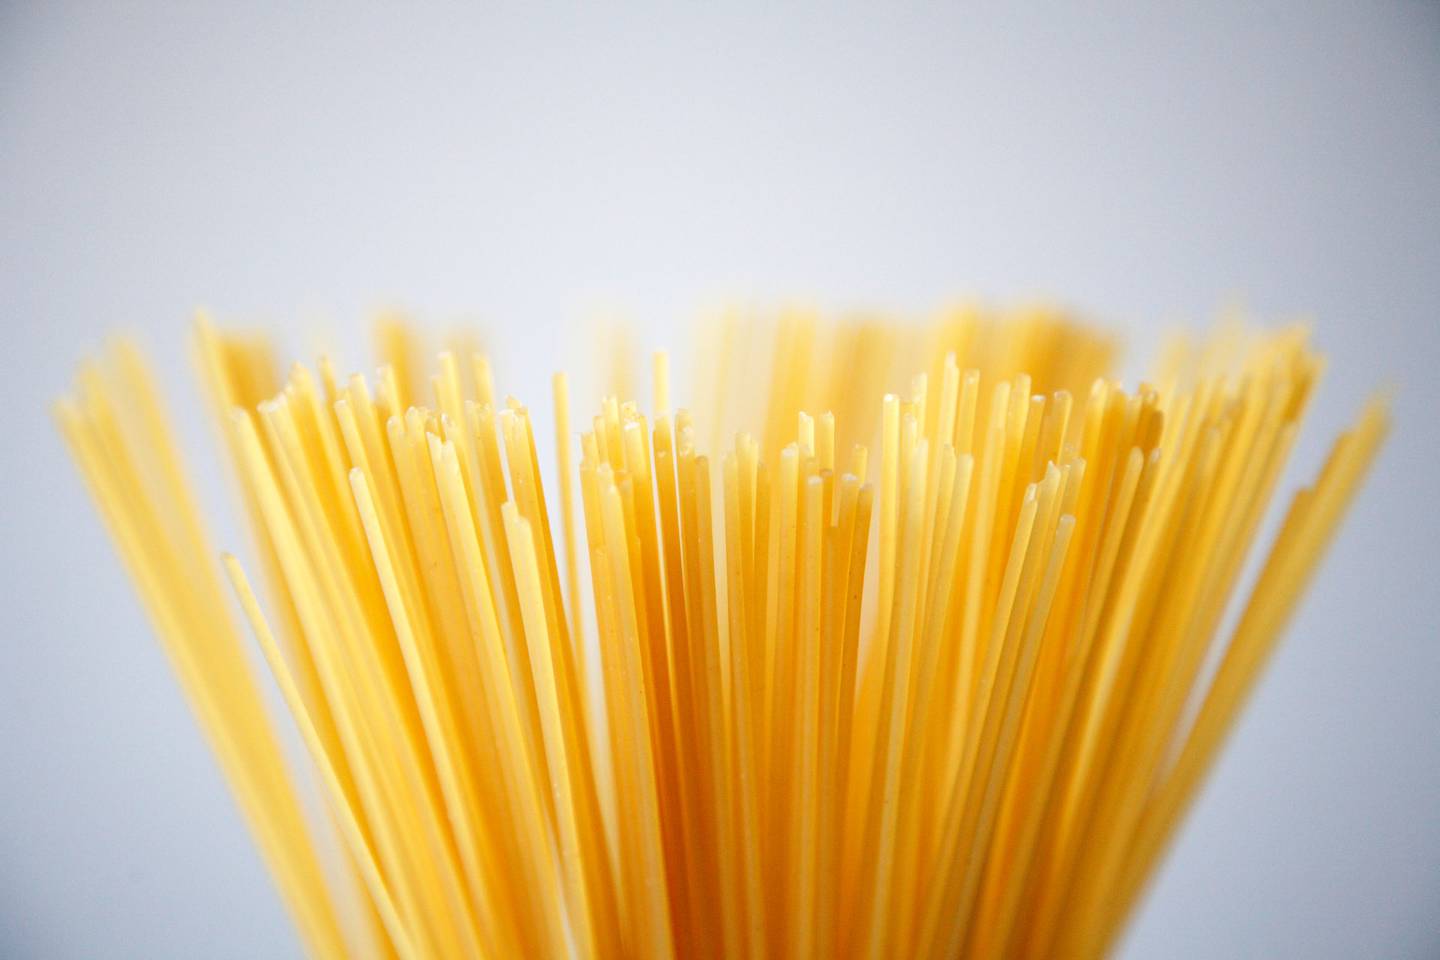 Los espaguetis son uno de los principales carbohidratos de consumo regular.